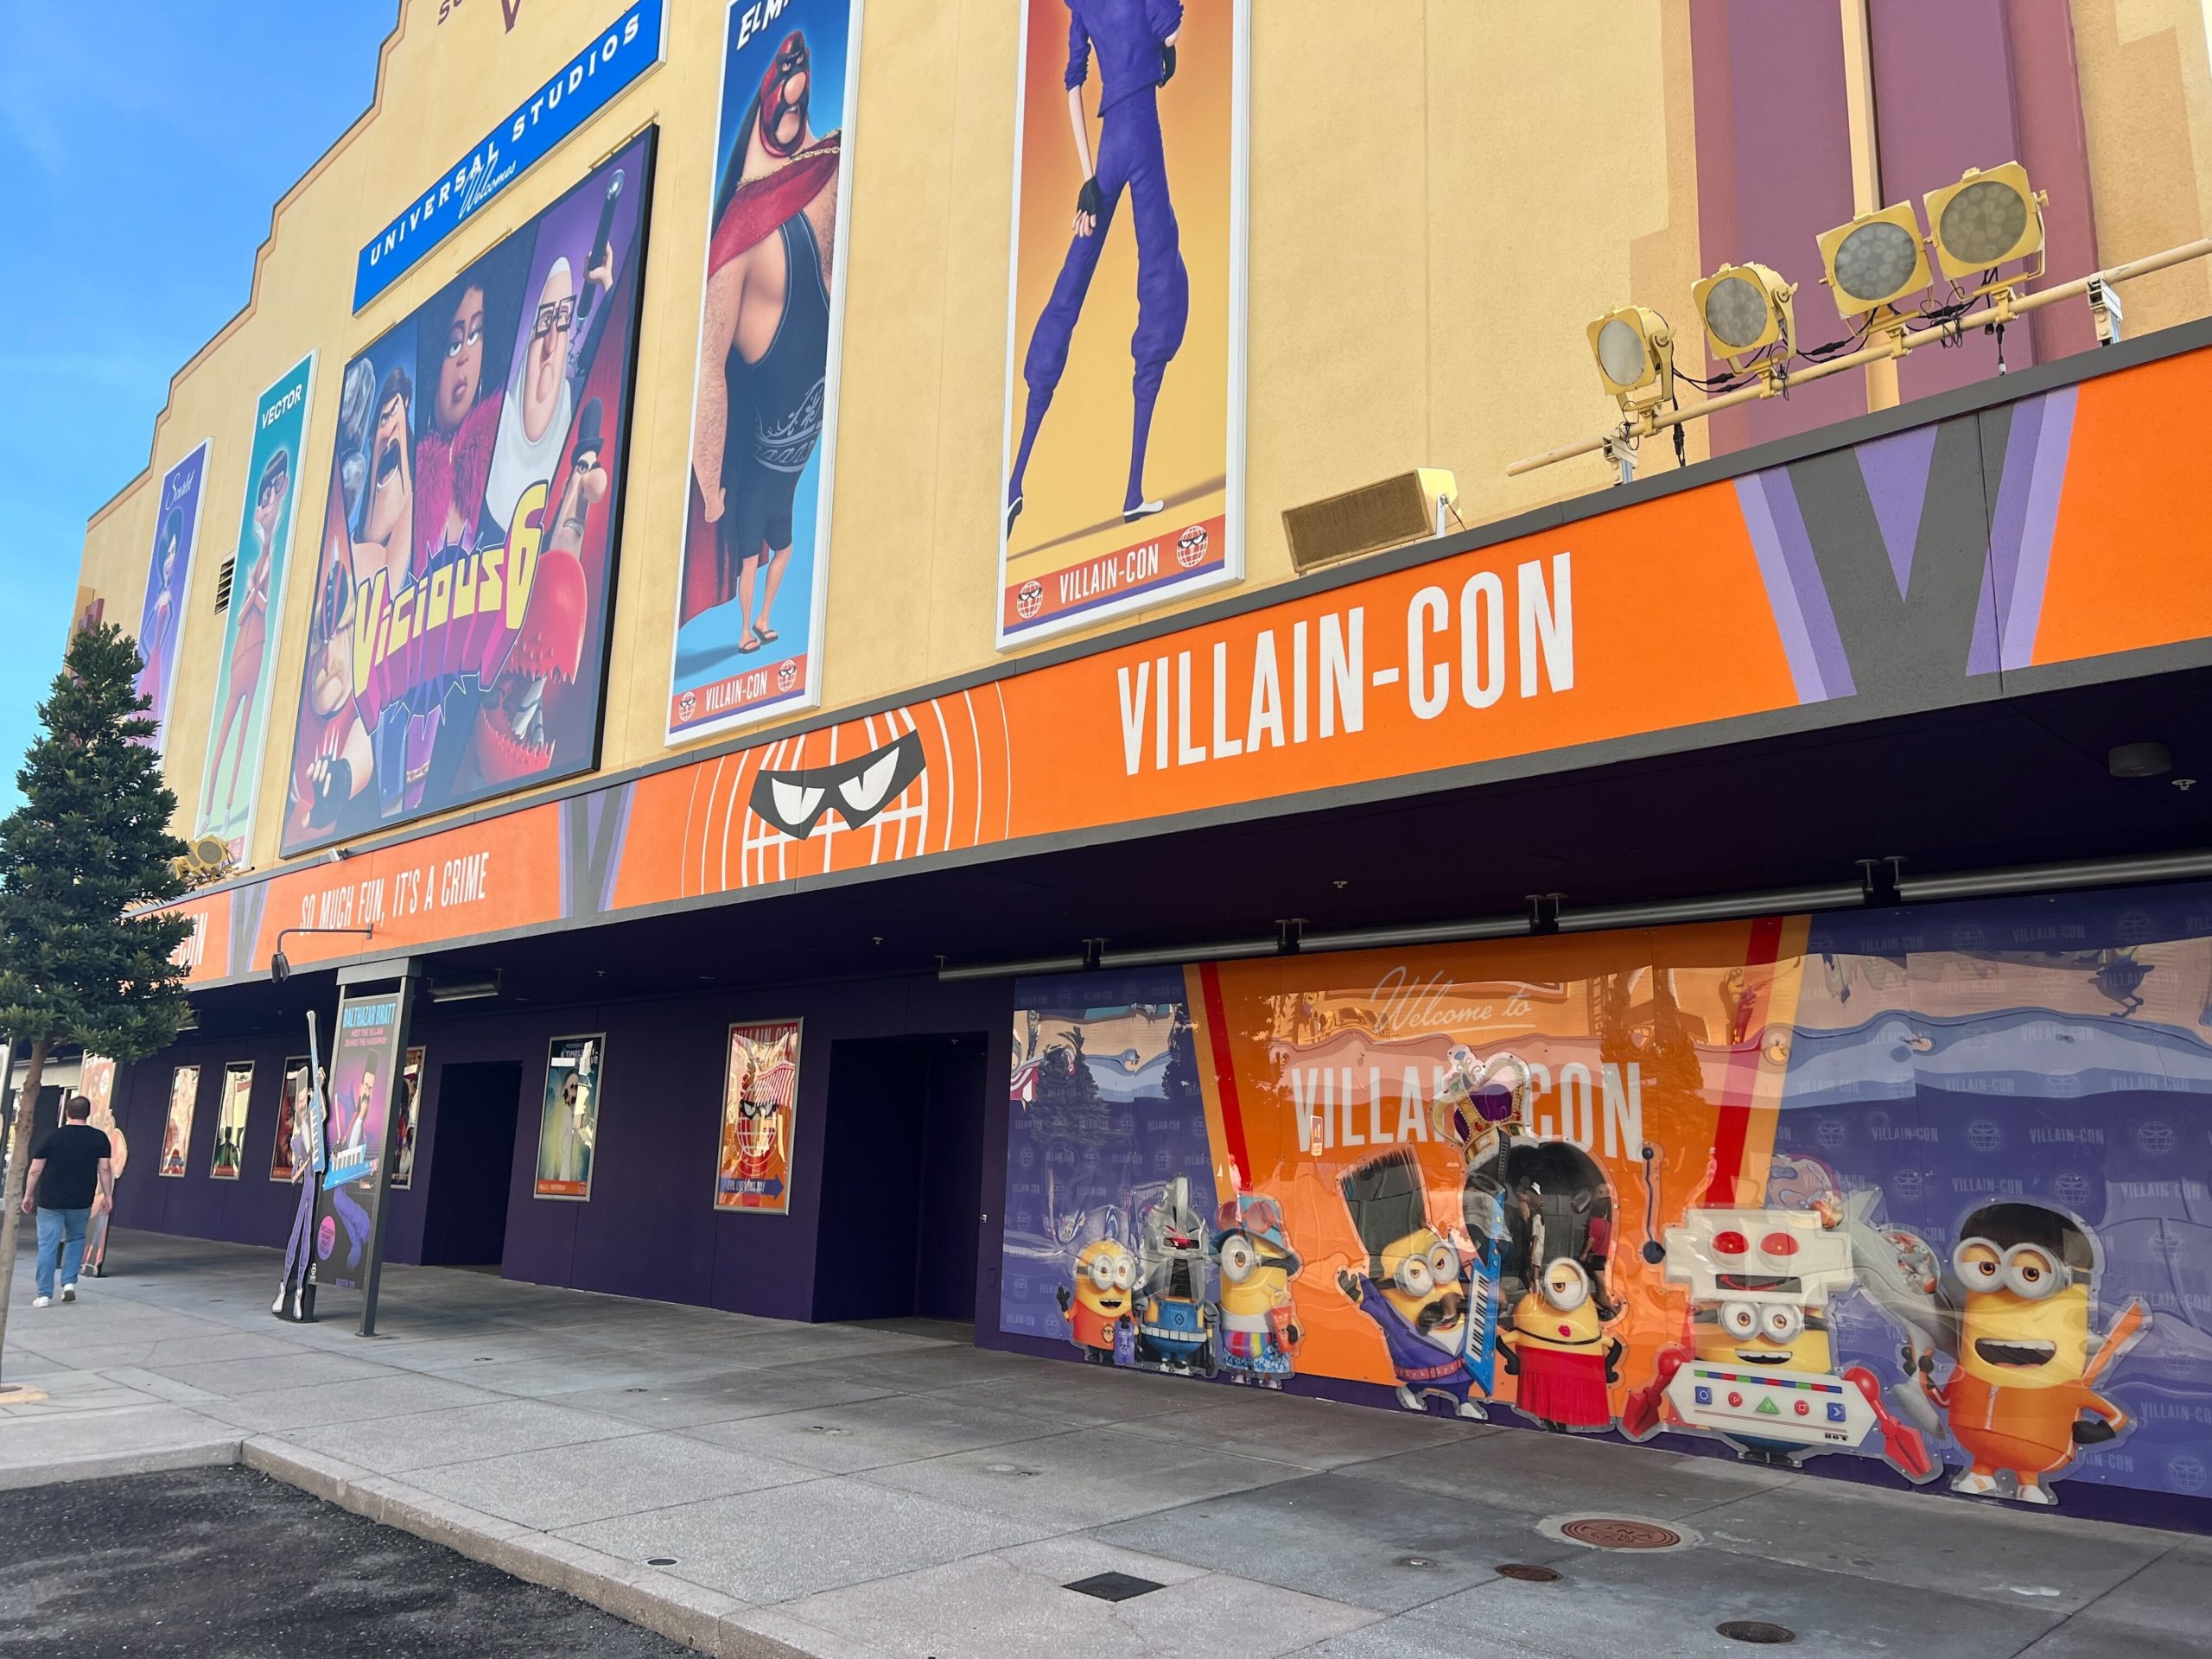 Photos: Walls Down at Villain-Con Minion Blast!